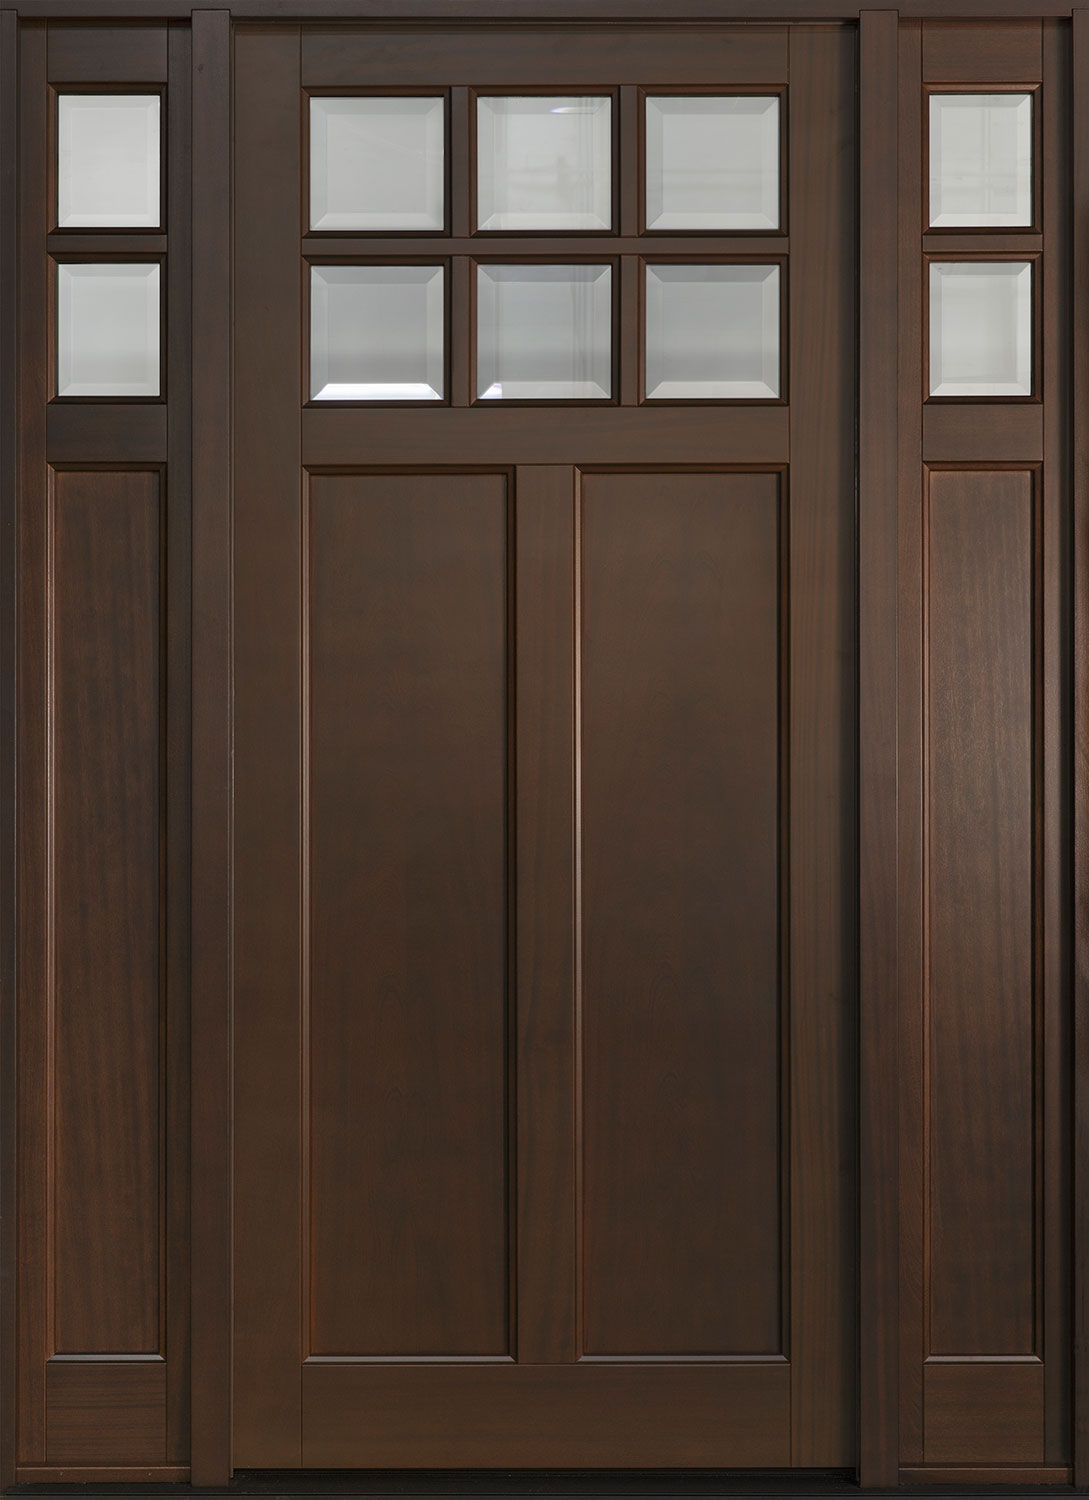 Classic Mahogany Wood Front Door  - GD-112PW  2SL